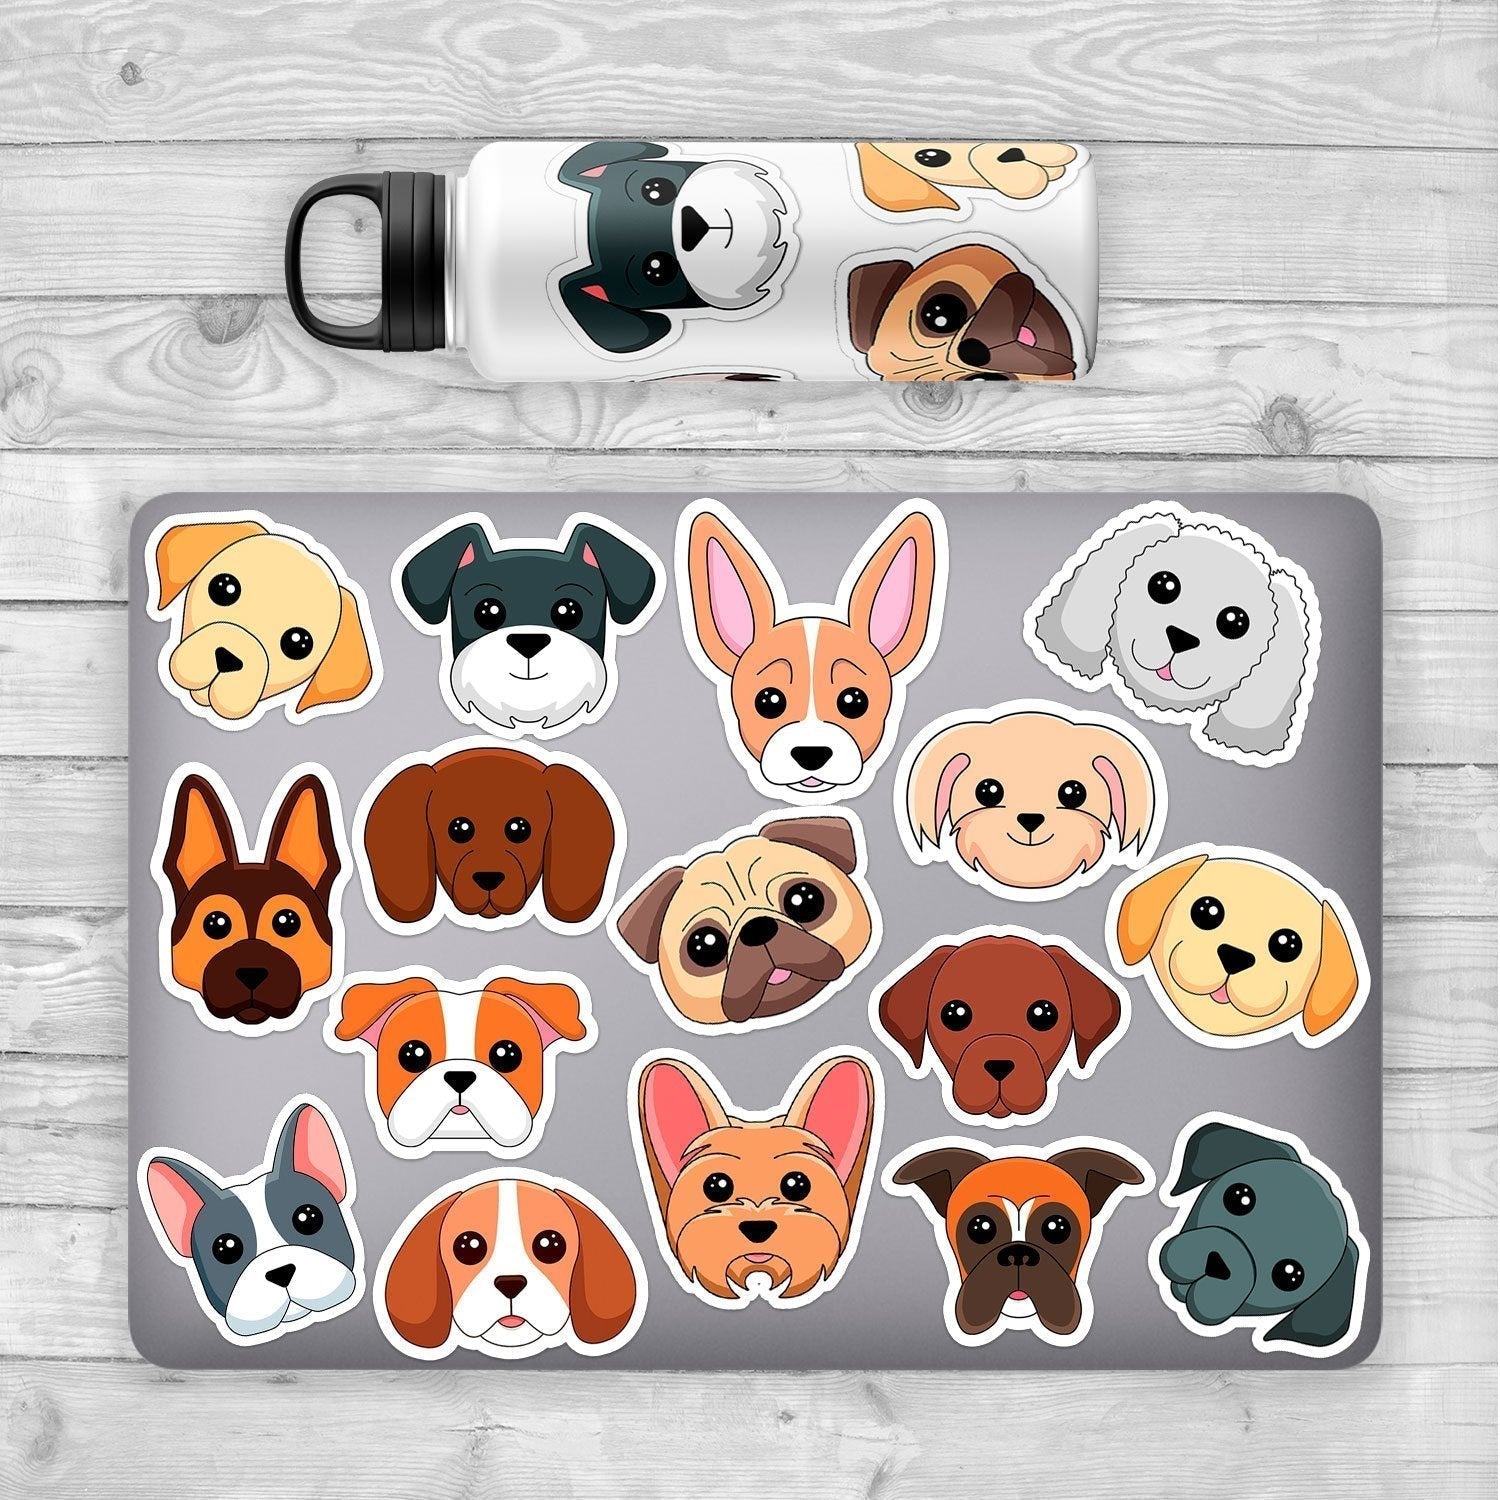 Bedlington Terrier Sticker - Dogstickers.co